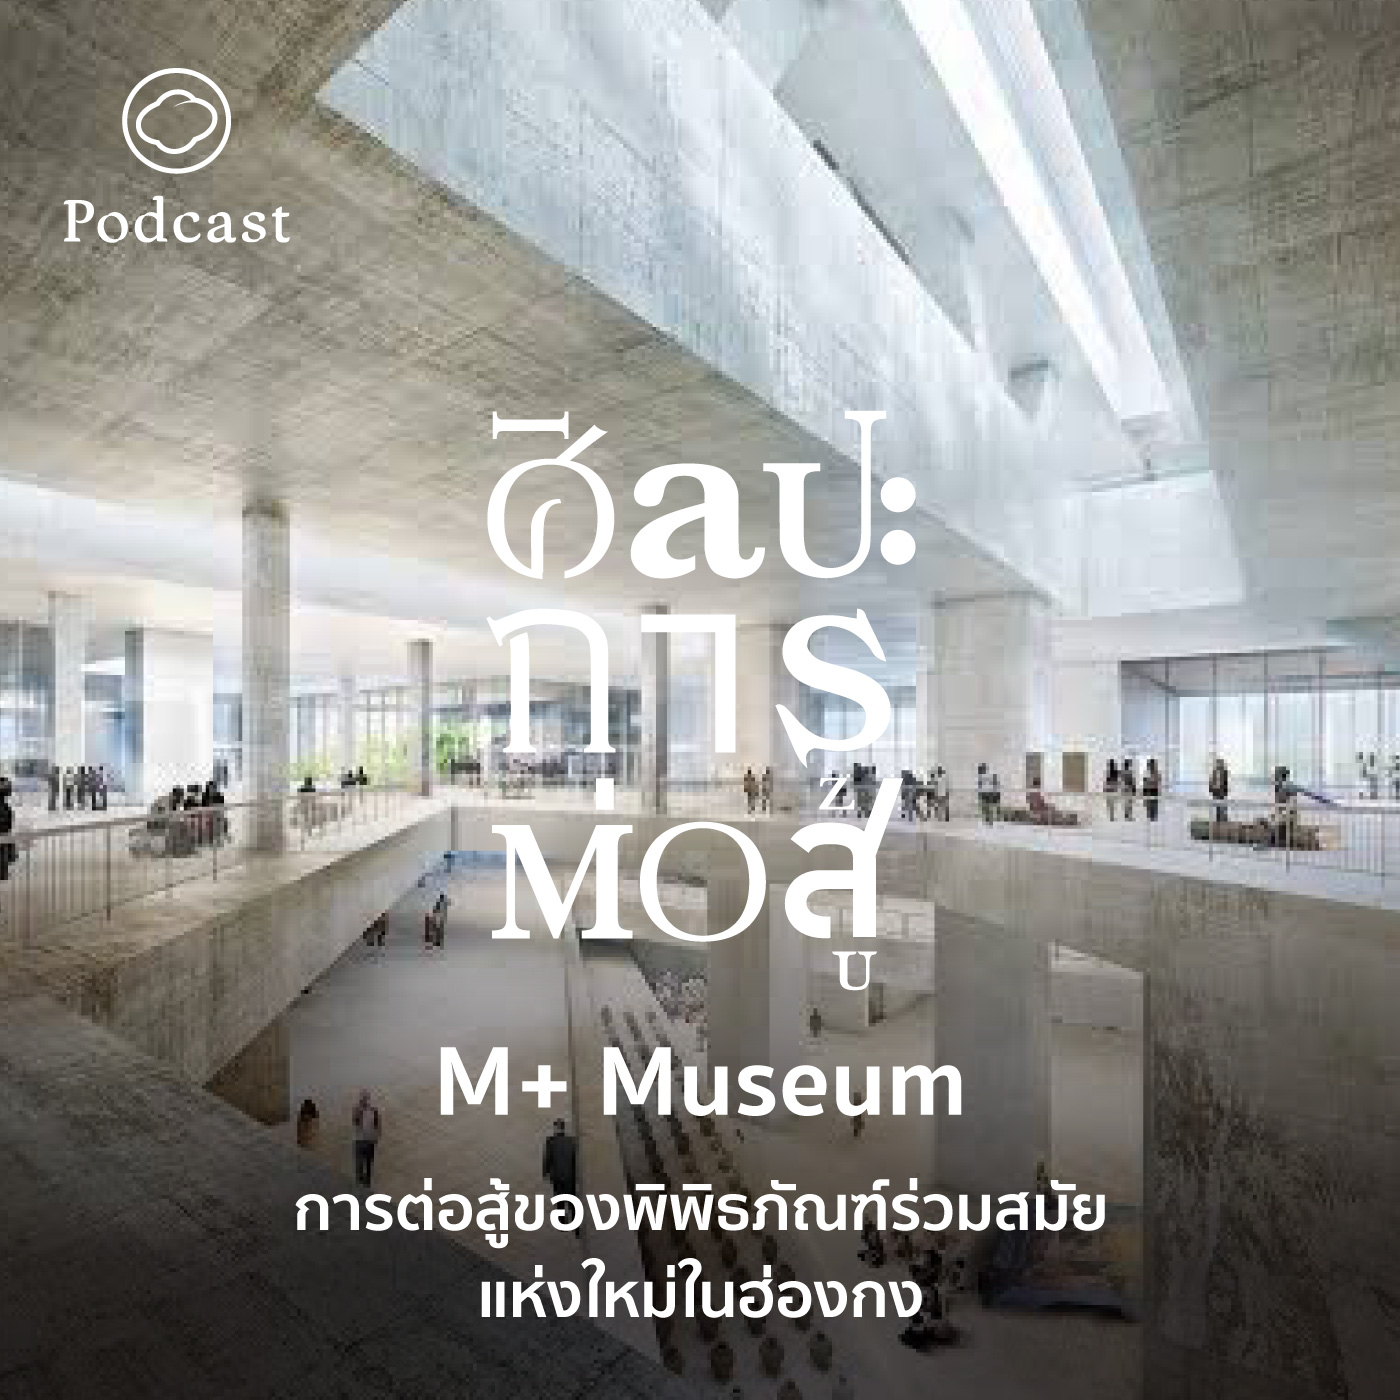 EP. 61 M+ Museum การต่อสู้ของพิพิธภัณฑ์ร่วมสมัยแห่งใหม่ในฮ่องกง - The Cloud Podcast